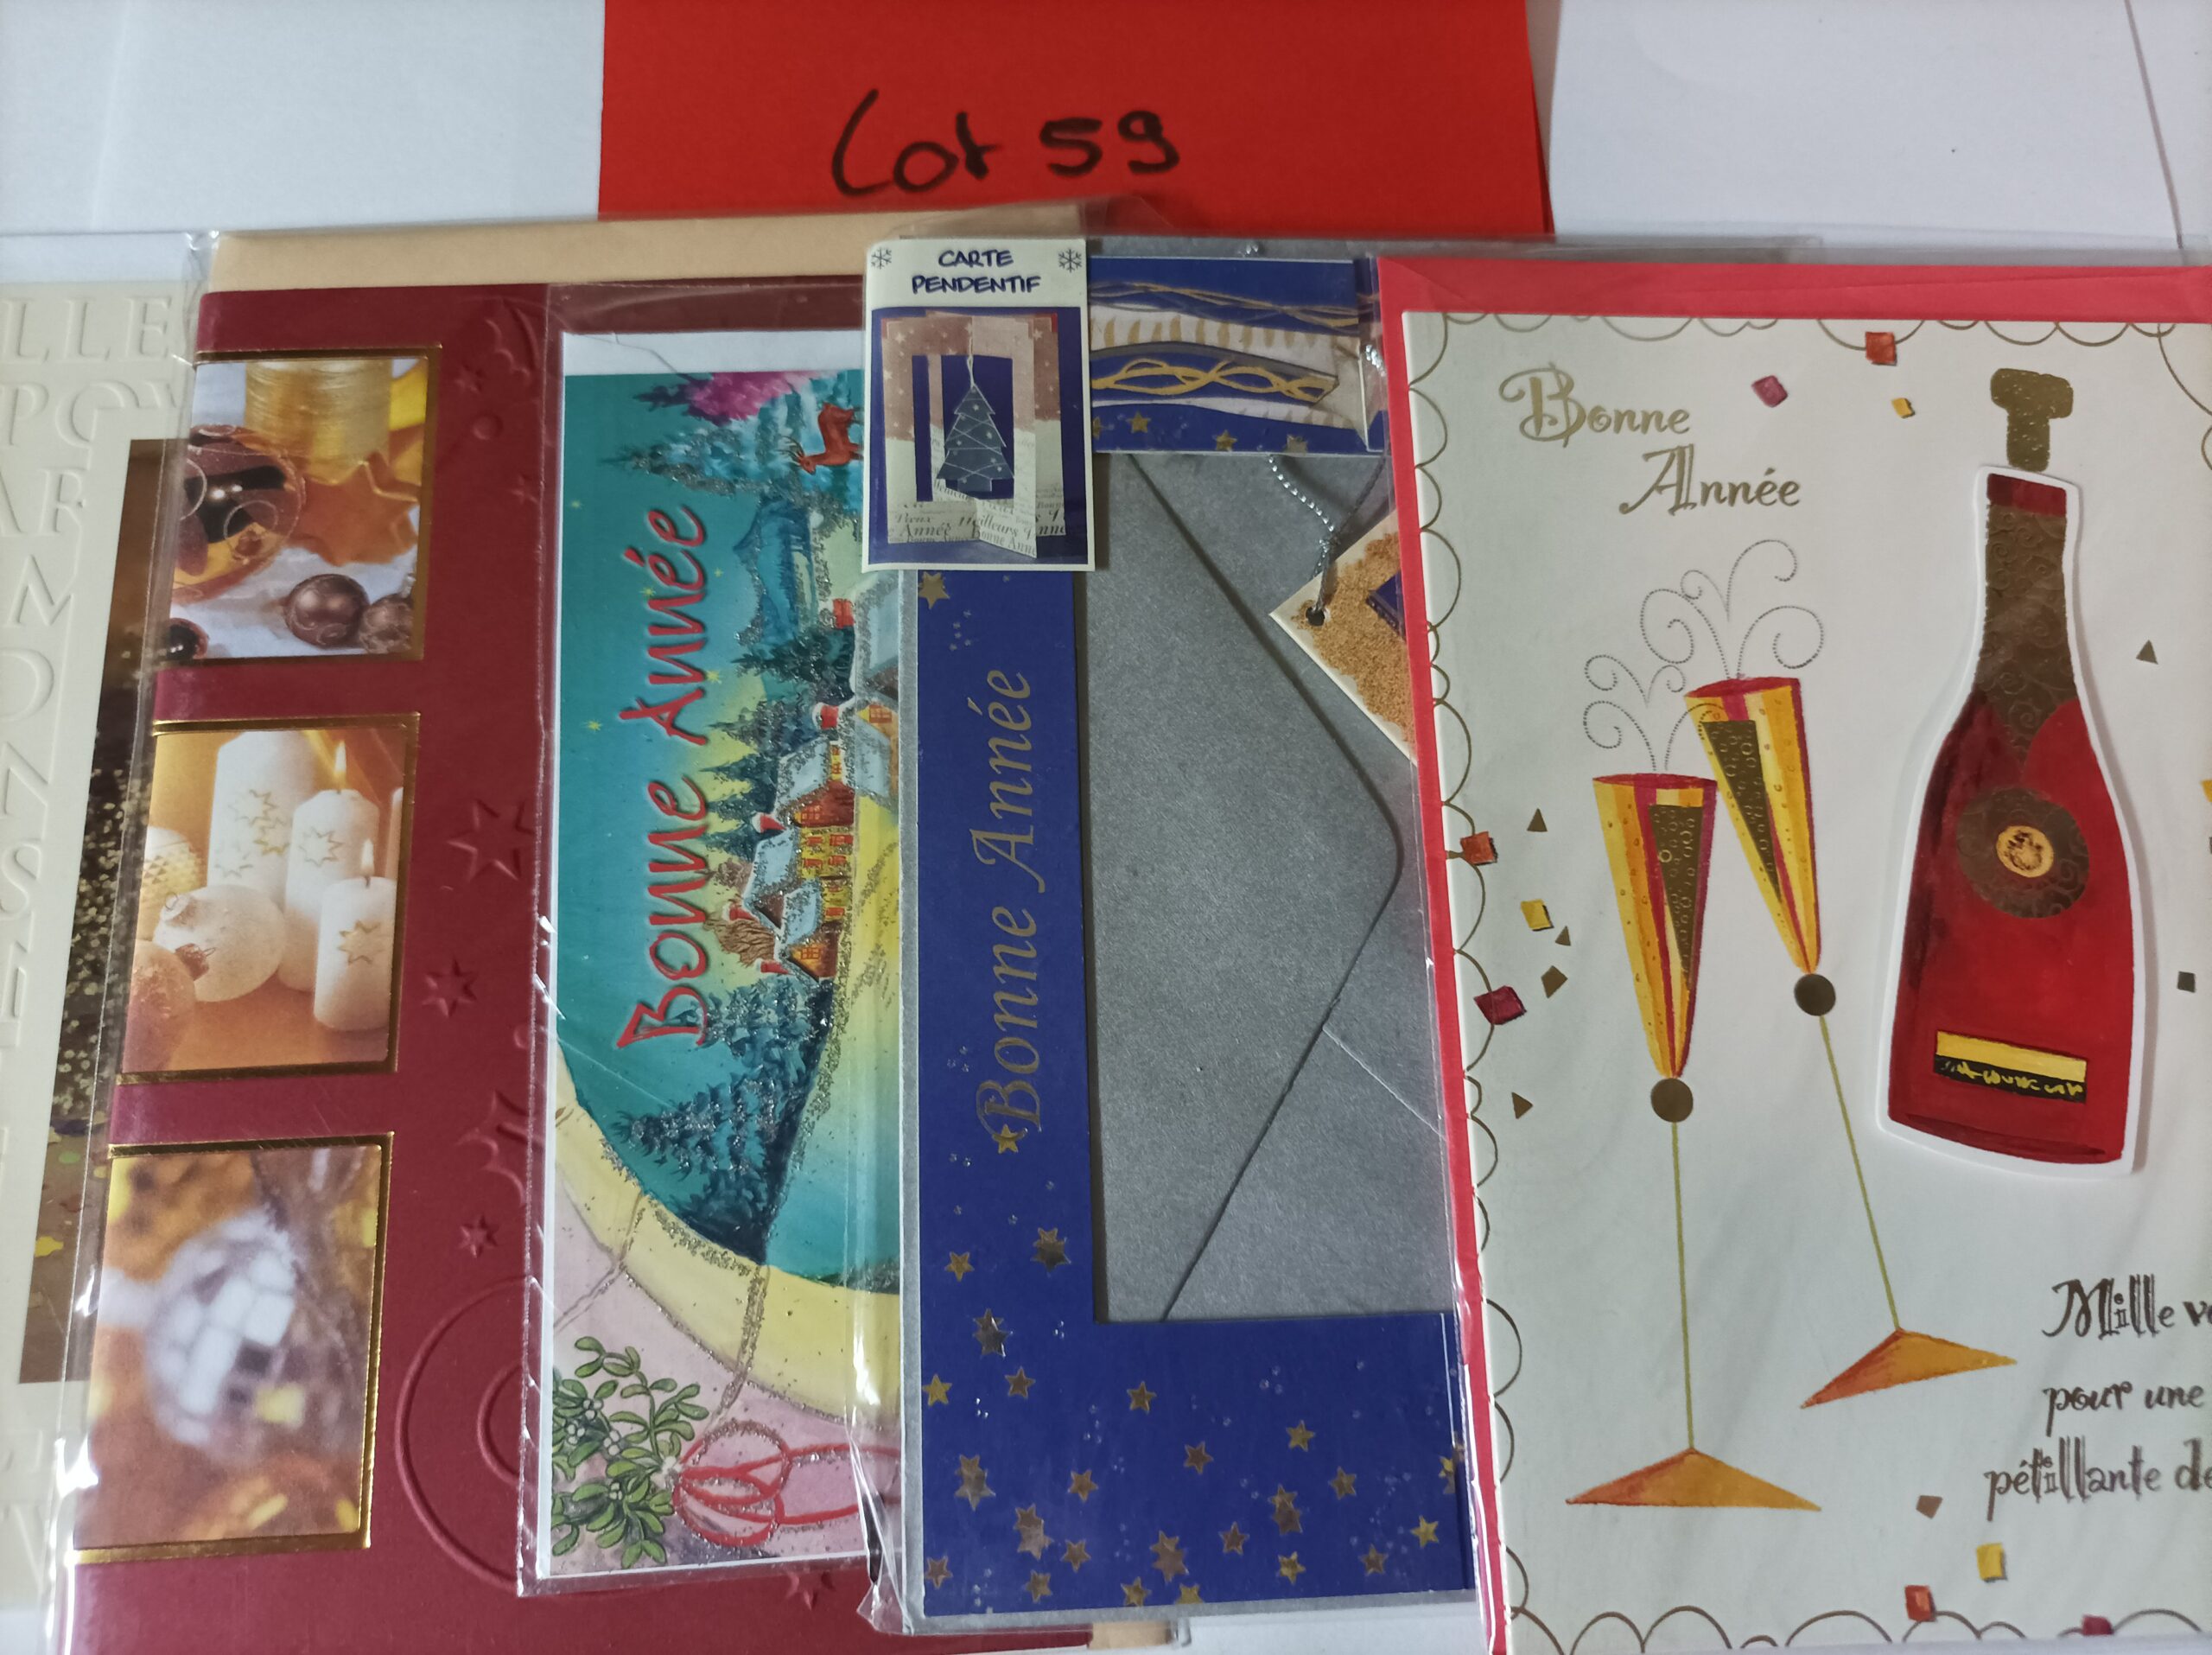 Lot de 5 cartes postales + enveloppes bonne année (lot 59)